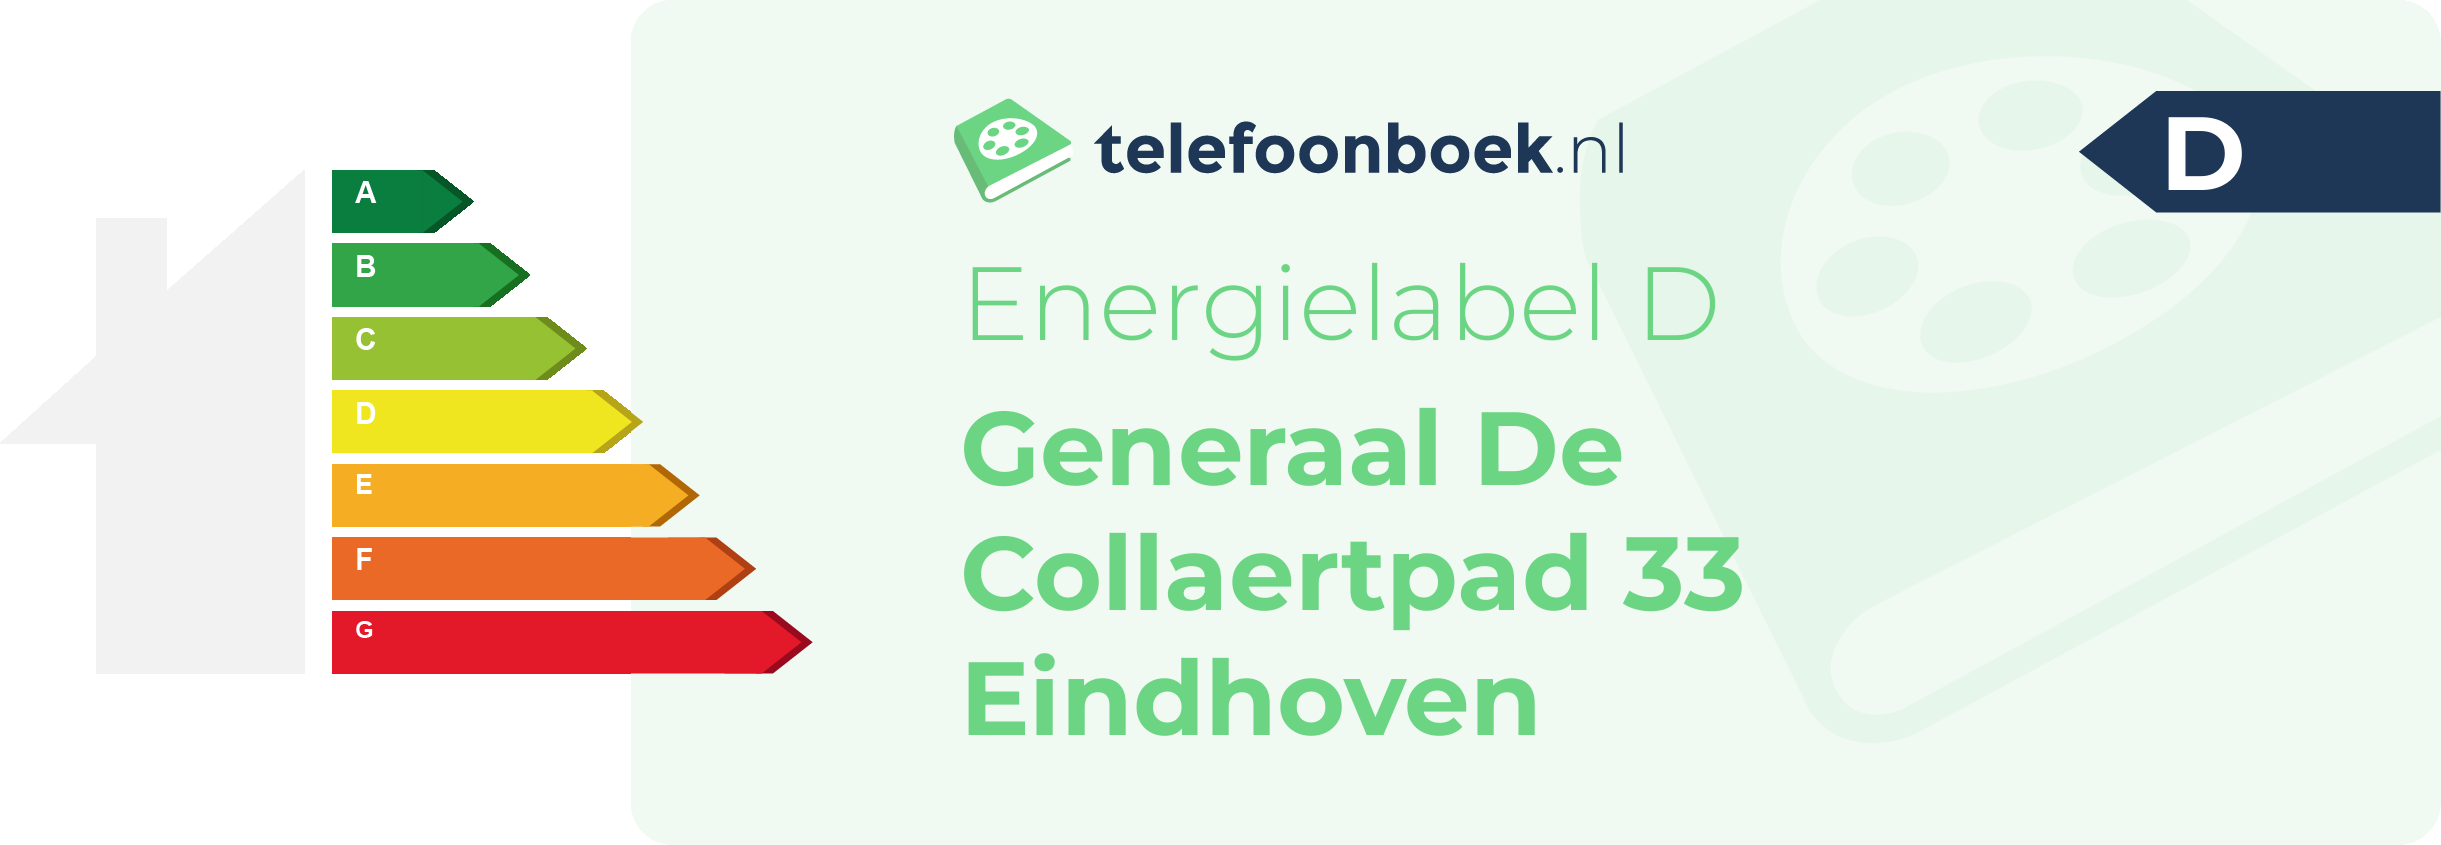 Energielabel Generaal De Collaertpad 33 Eindhoven